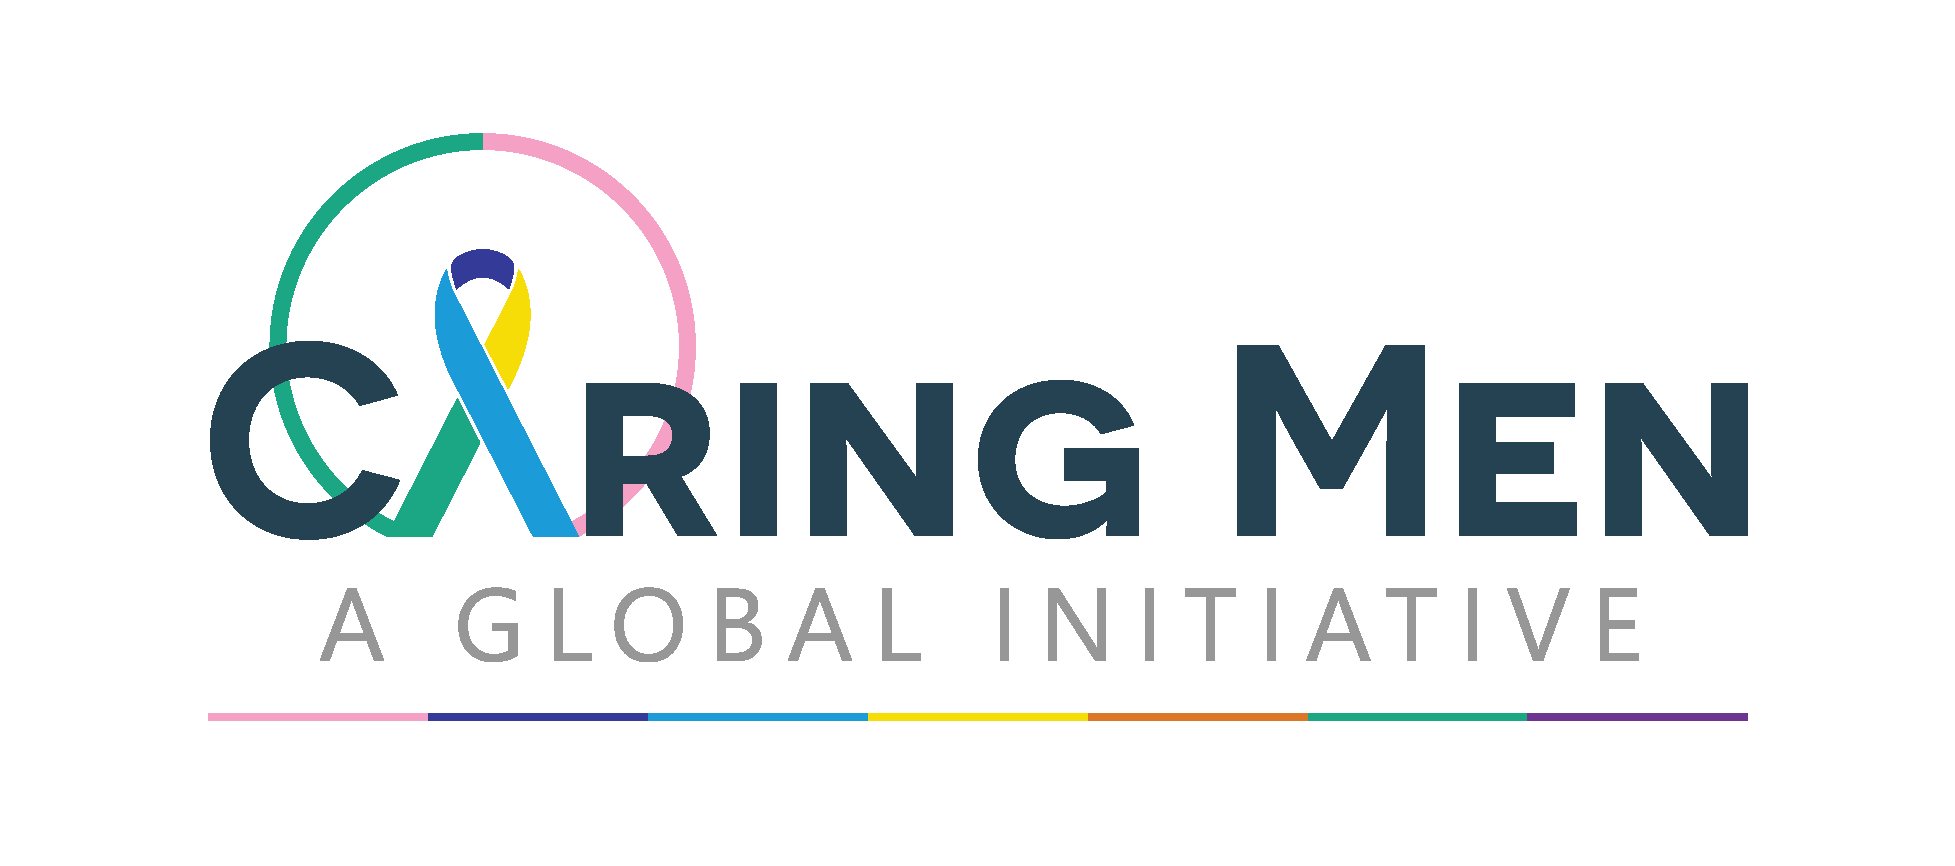 Caring Men logo